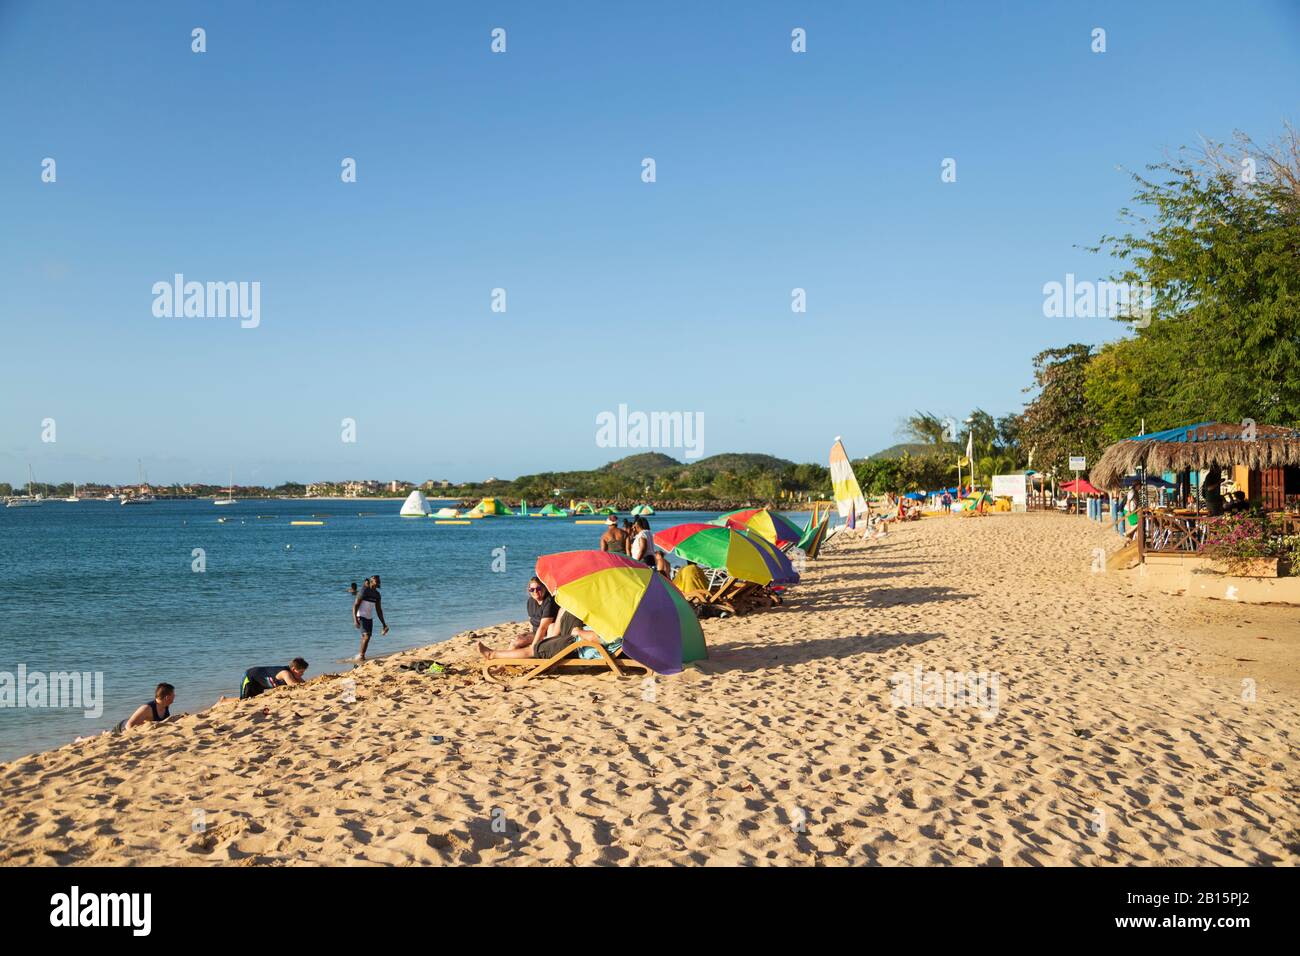 Plage de sable une journée ensoleillée avec des gens qui s'amusent sur la plage au soleil et se baignent en mer et se prometent sous les parasols Banque D'Images